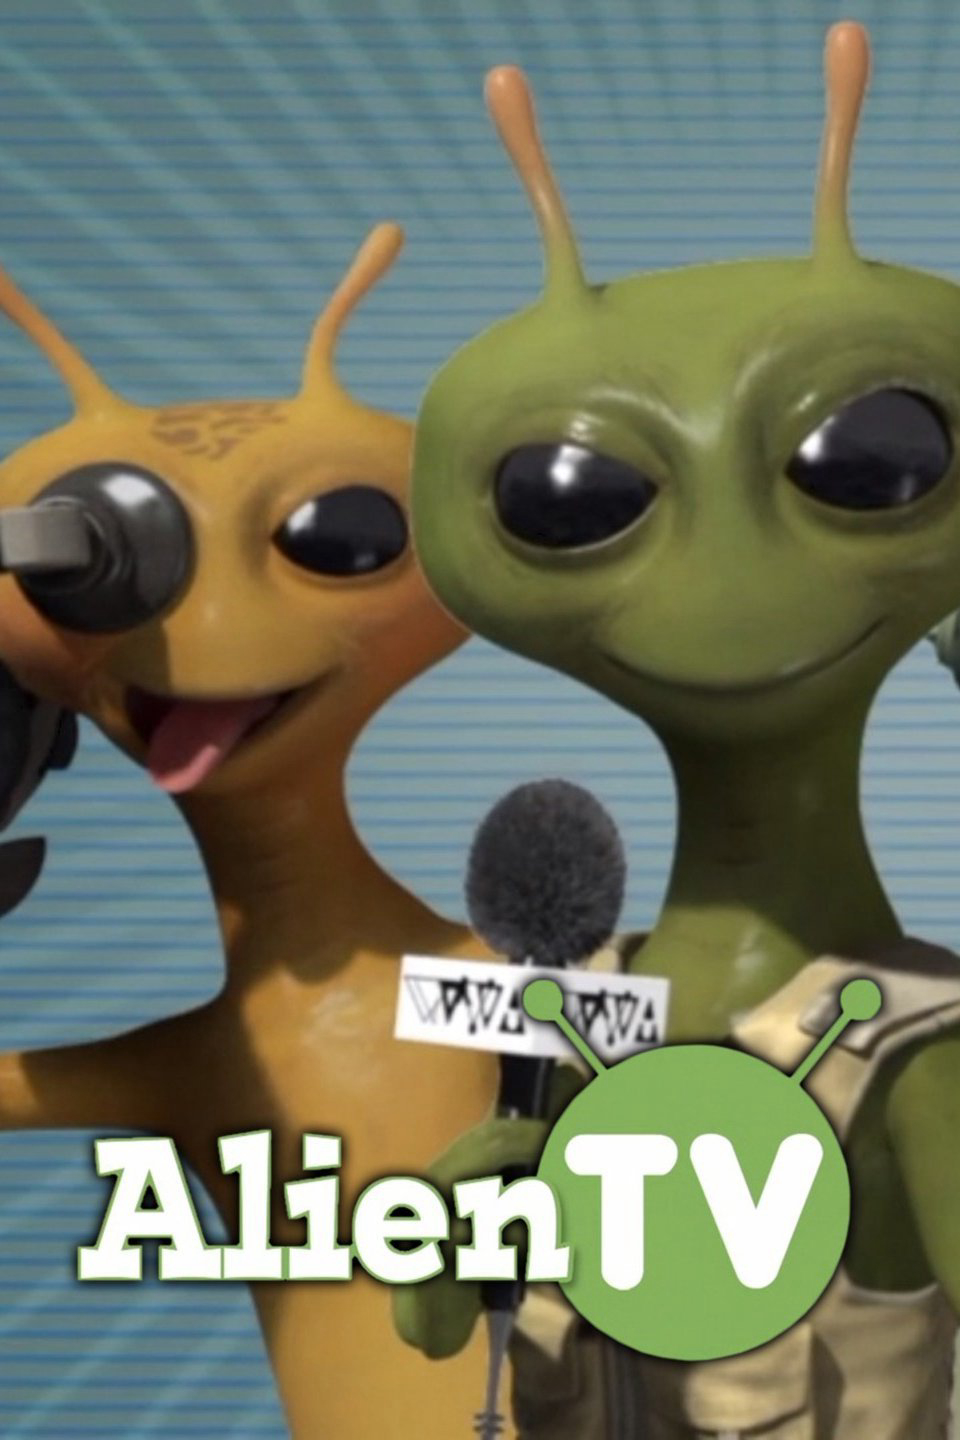 Truyền hình ngoài hành tinh (Phần 2) - Alien TV (Season 2)